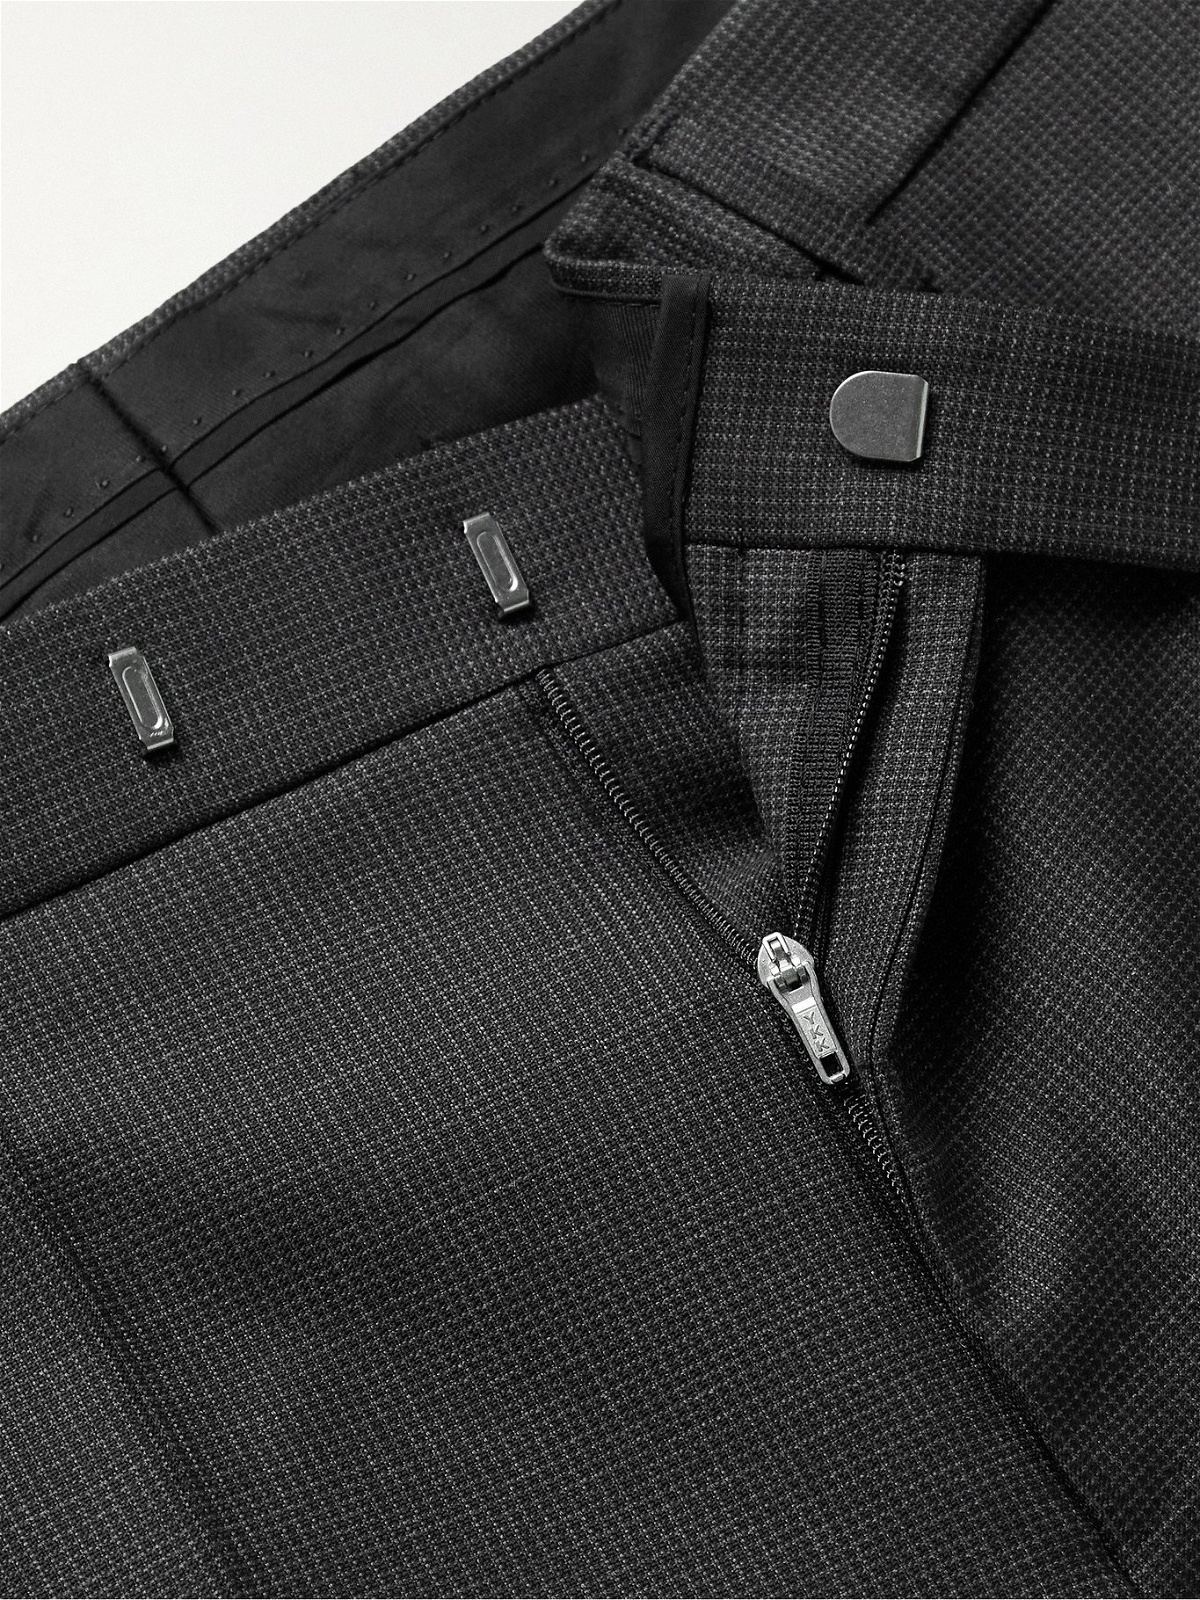 HUGO BOSS WOOL Trousers - UK10 W30 L30 - Black - Great Condition - Women's  | eBay